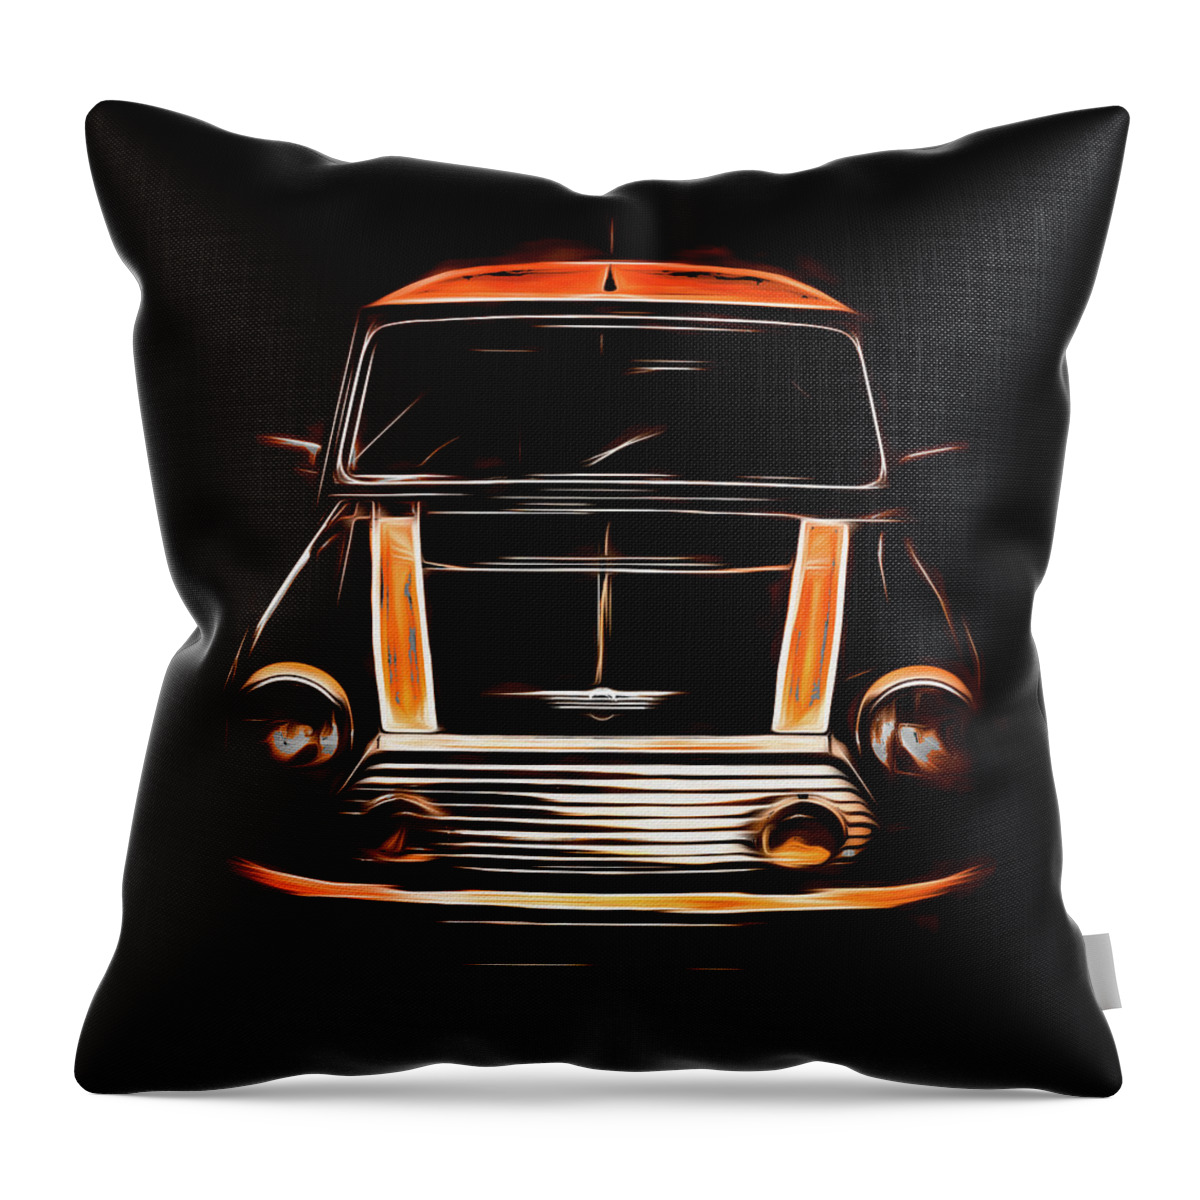  Car Throw Pillow featuring the digital art Mini Cooper Love by Carl H Payne